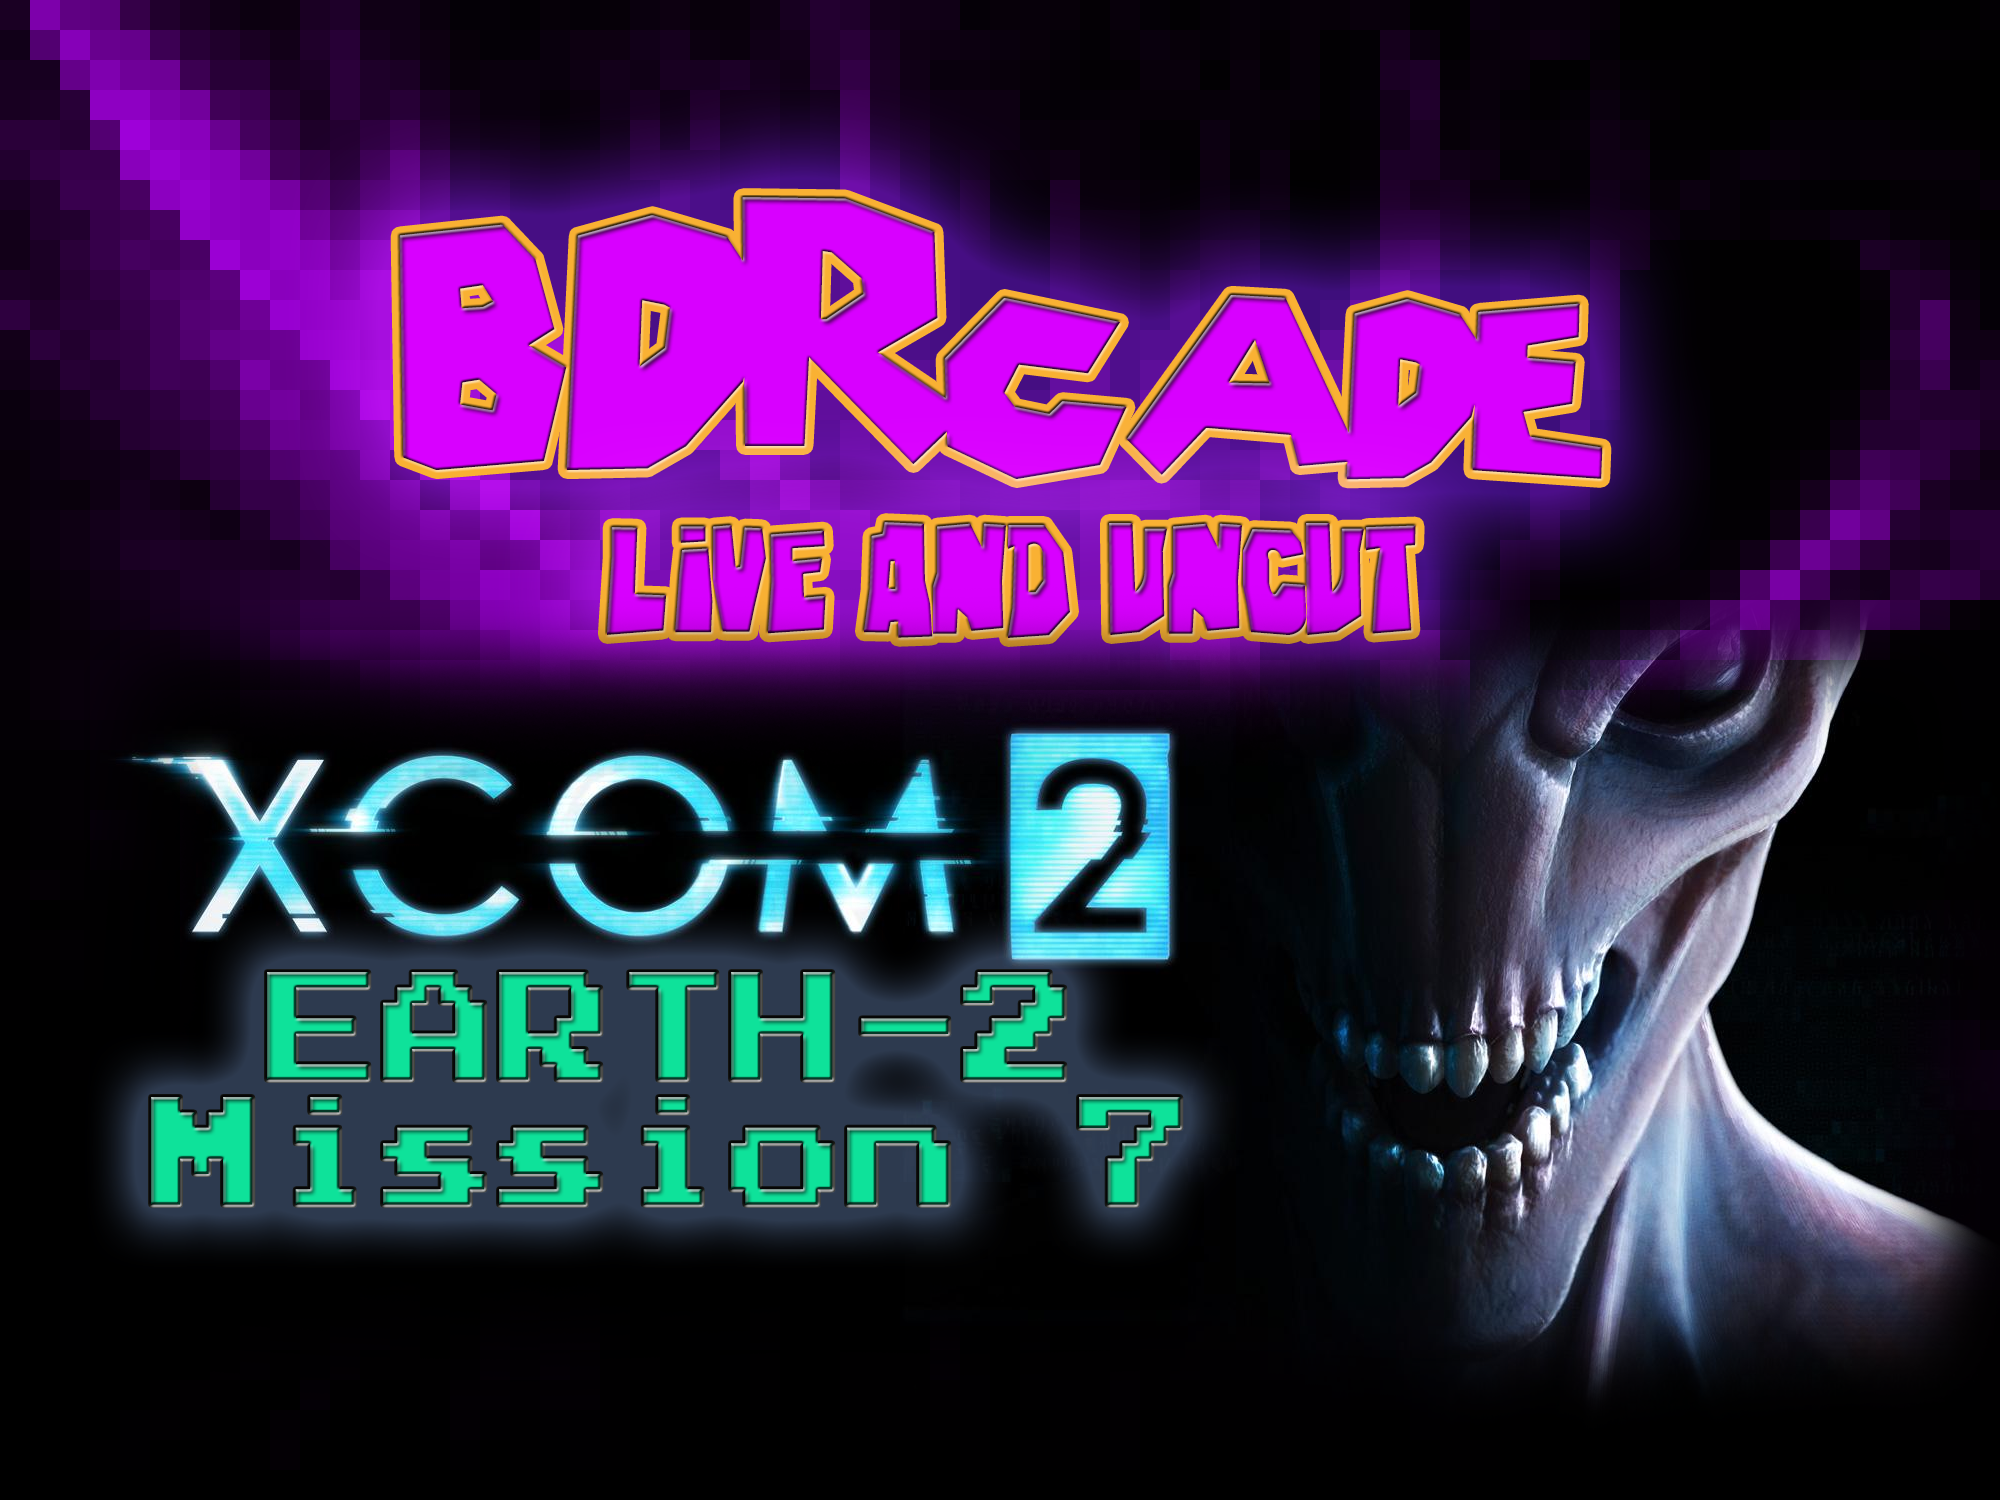 XCOM 2 (Earth-2) : Mission 7 – A BDRcade Live Stream